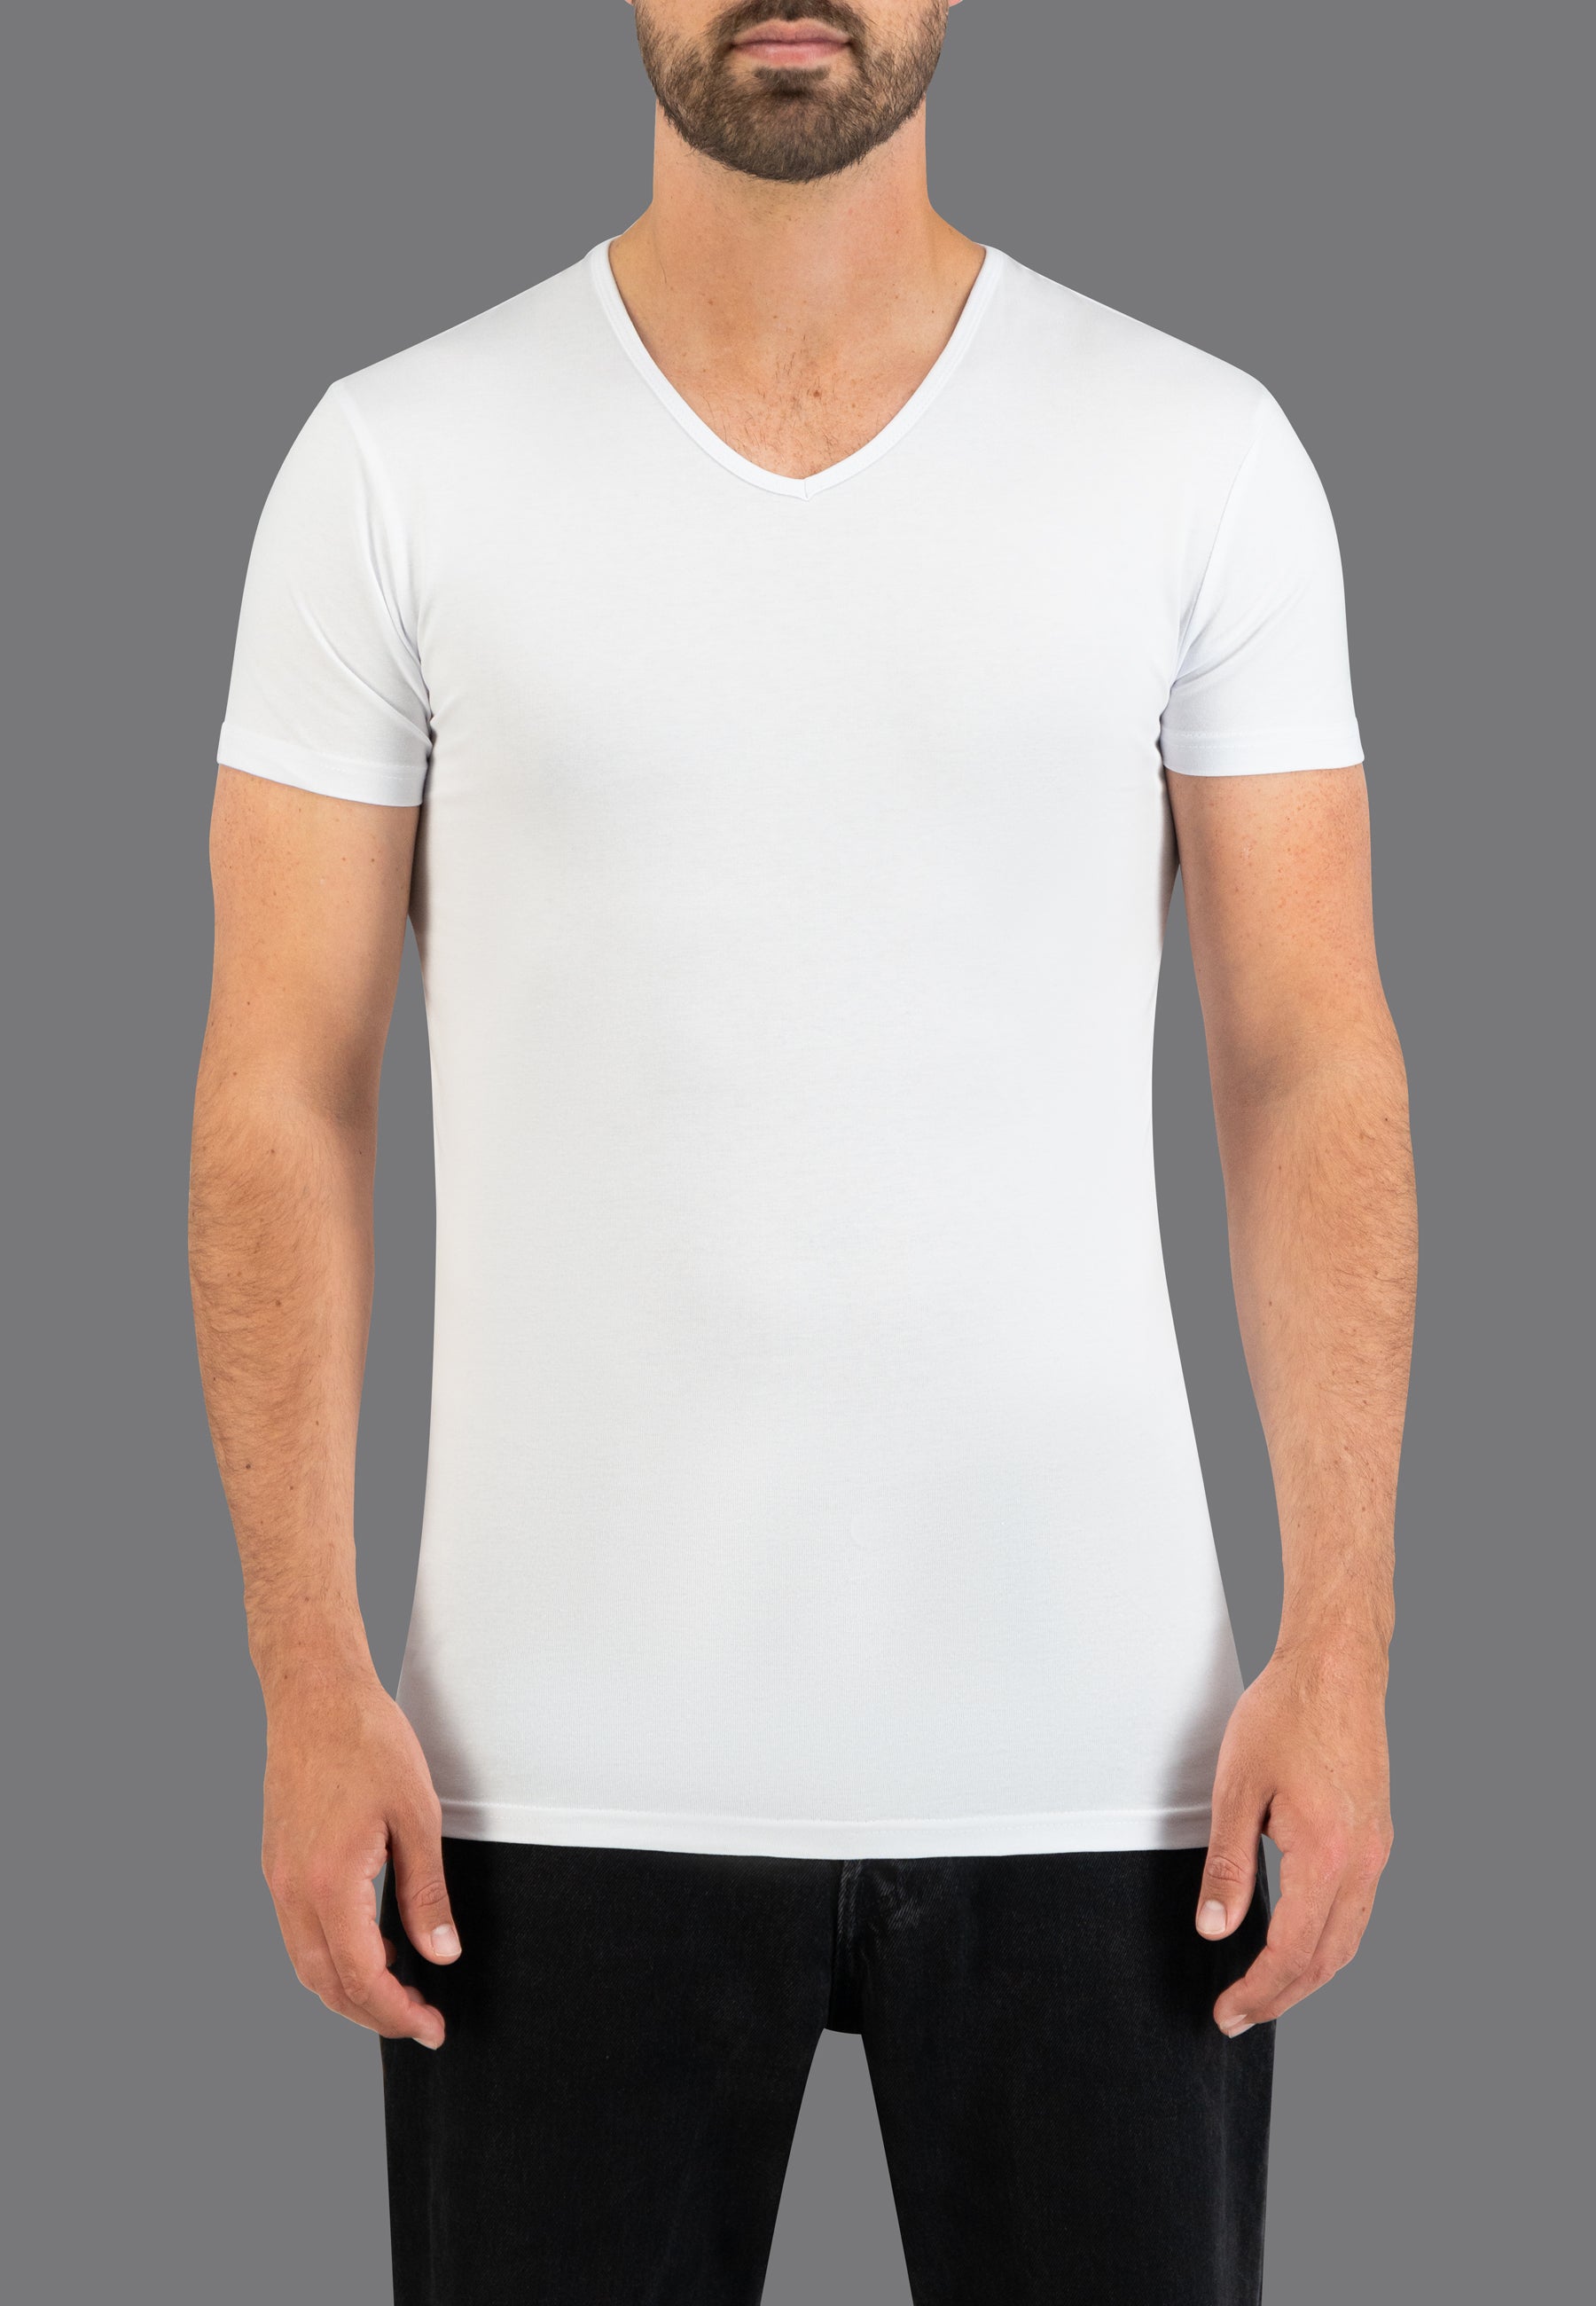 Peregrination Pessimistisch Poging Basic T-shirts voor heren online kopen | Slaterstore - Slaterstore